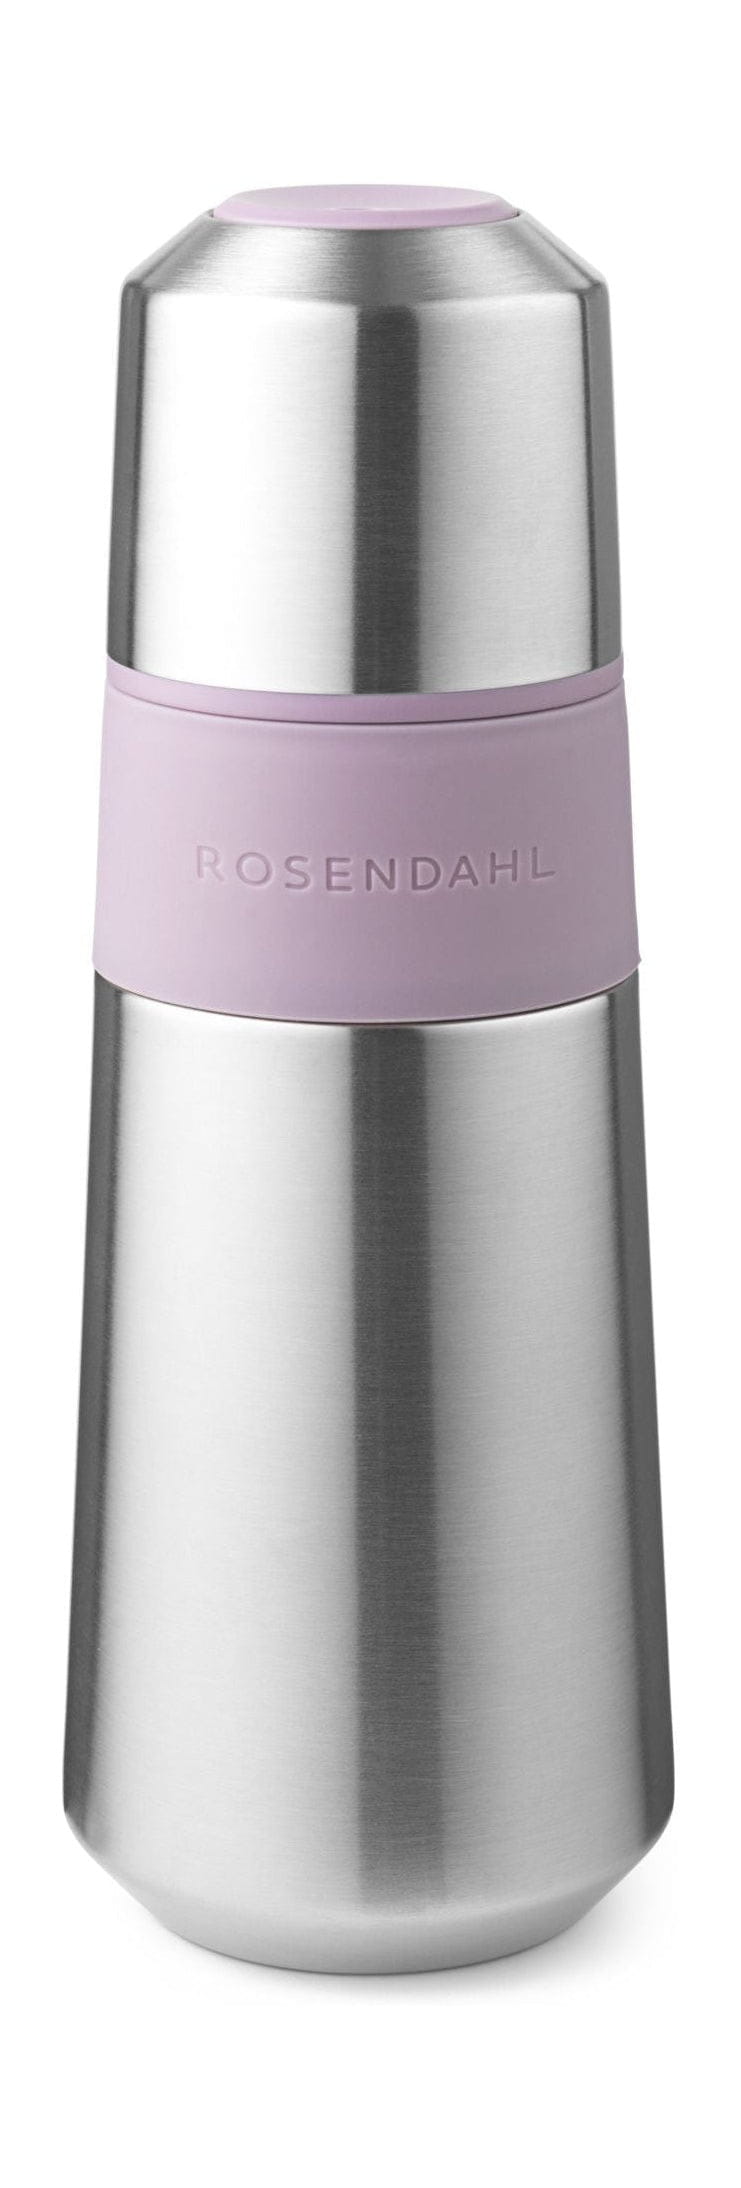 Rosendahl GC -ulko tyhjiöpullo 650 ml, violetti